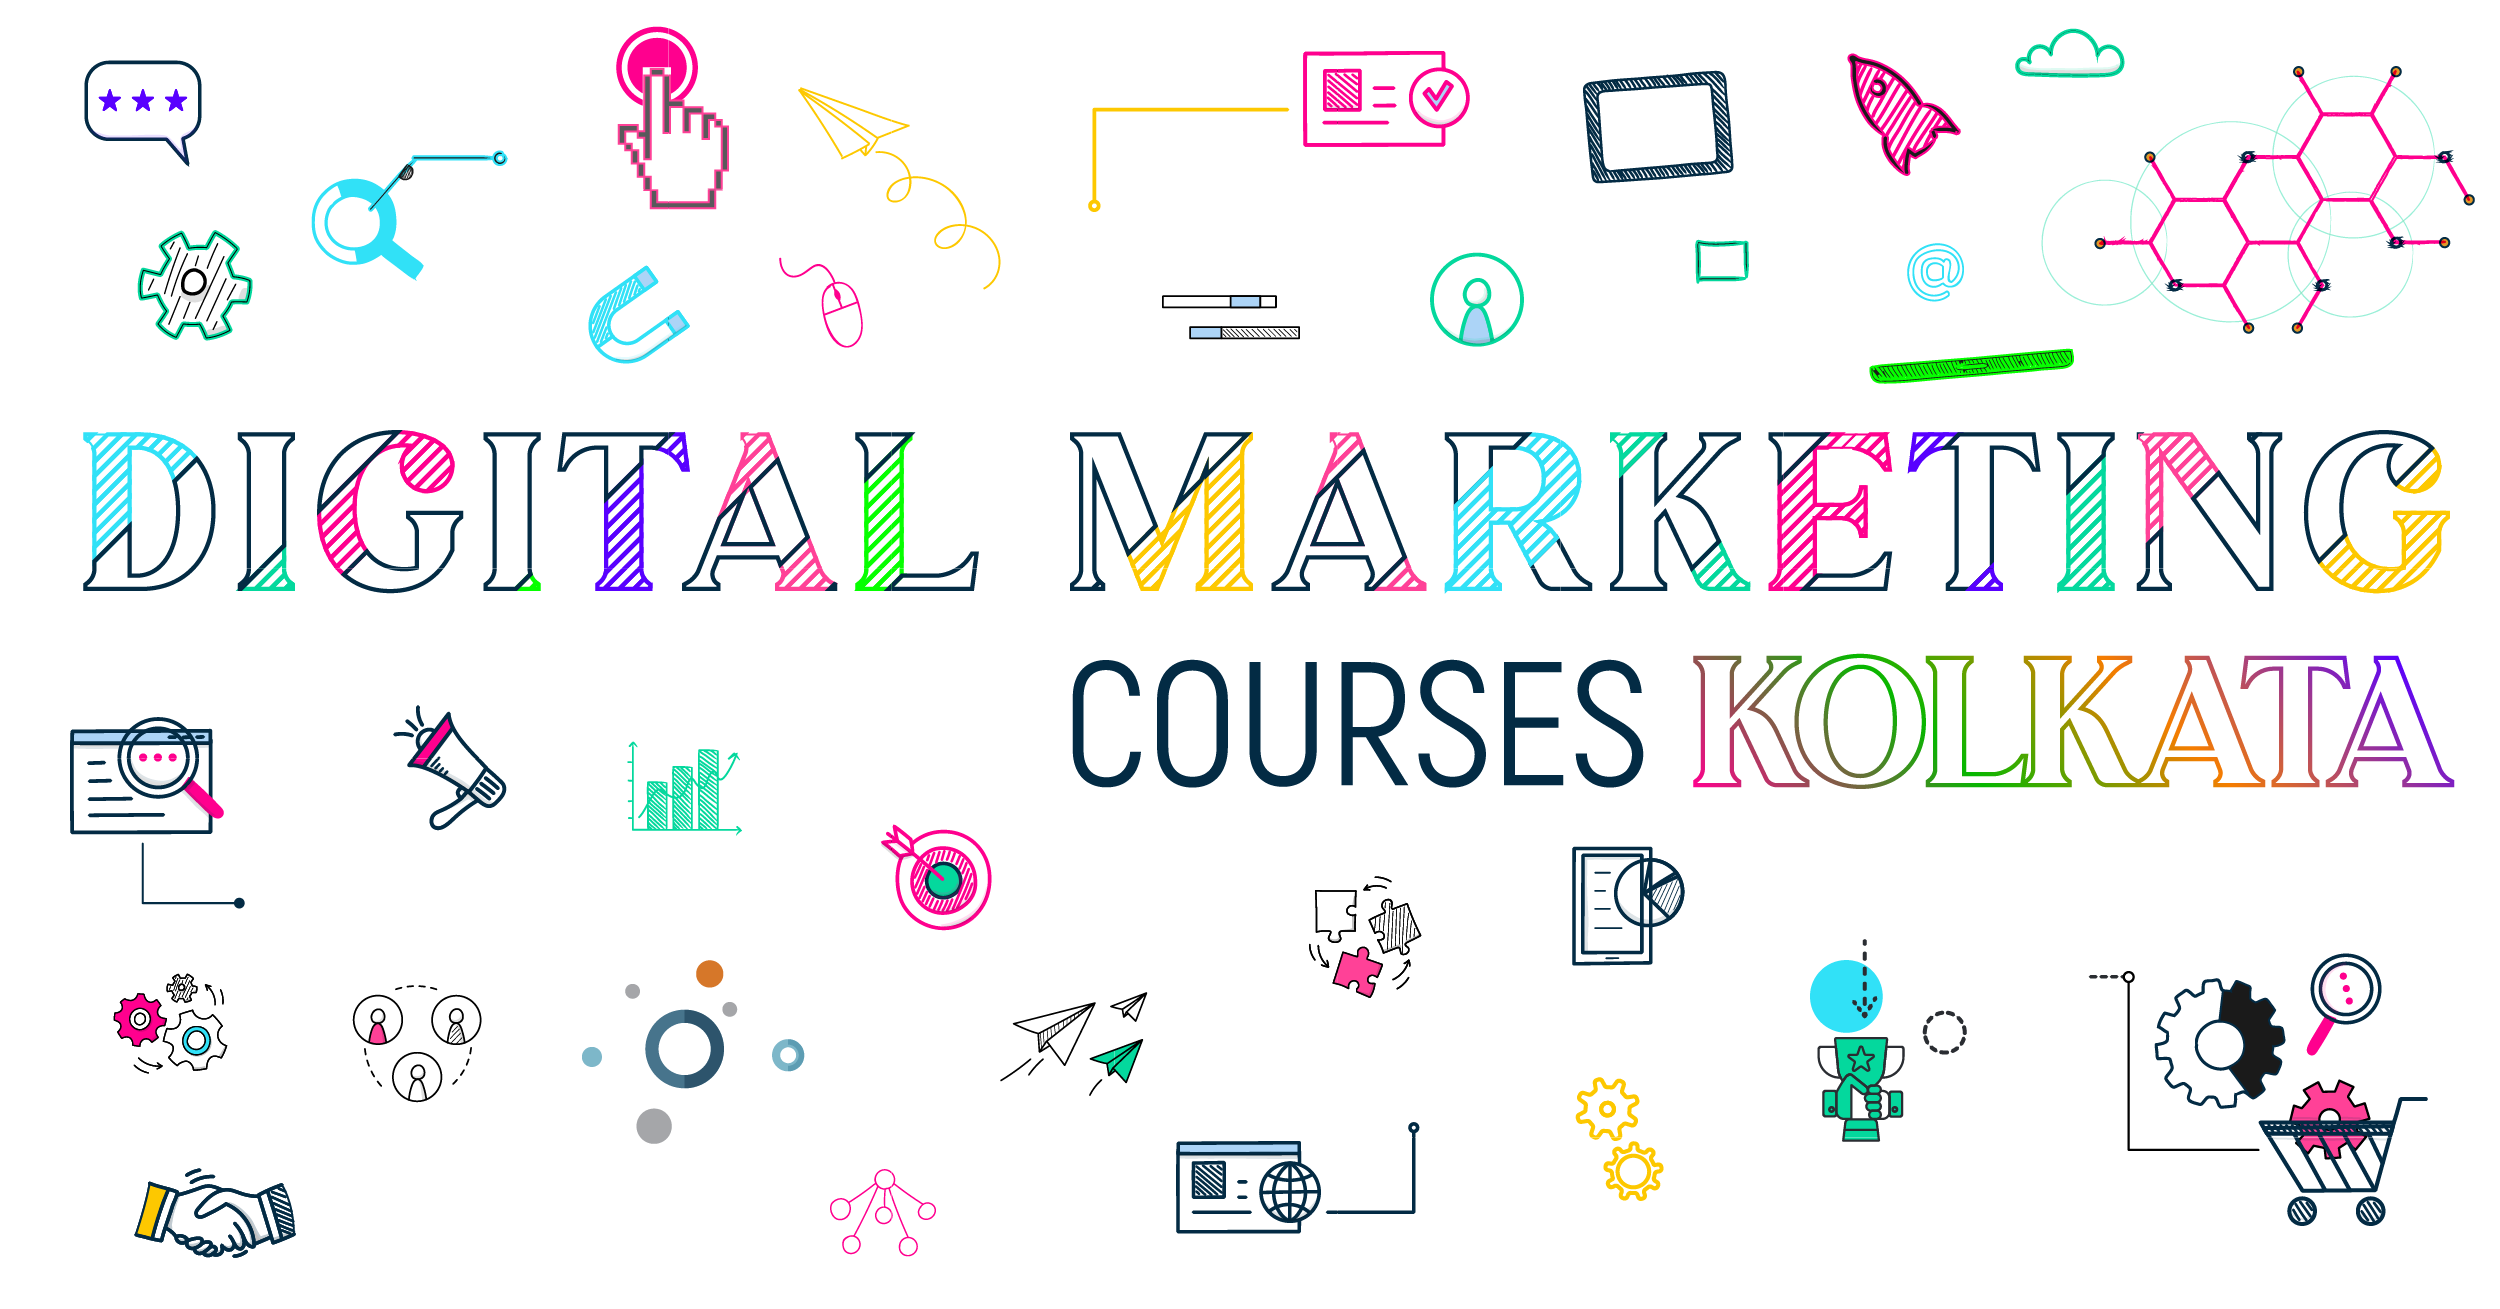 dihital marketing courses in kolkata